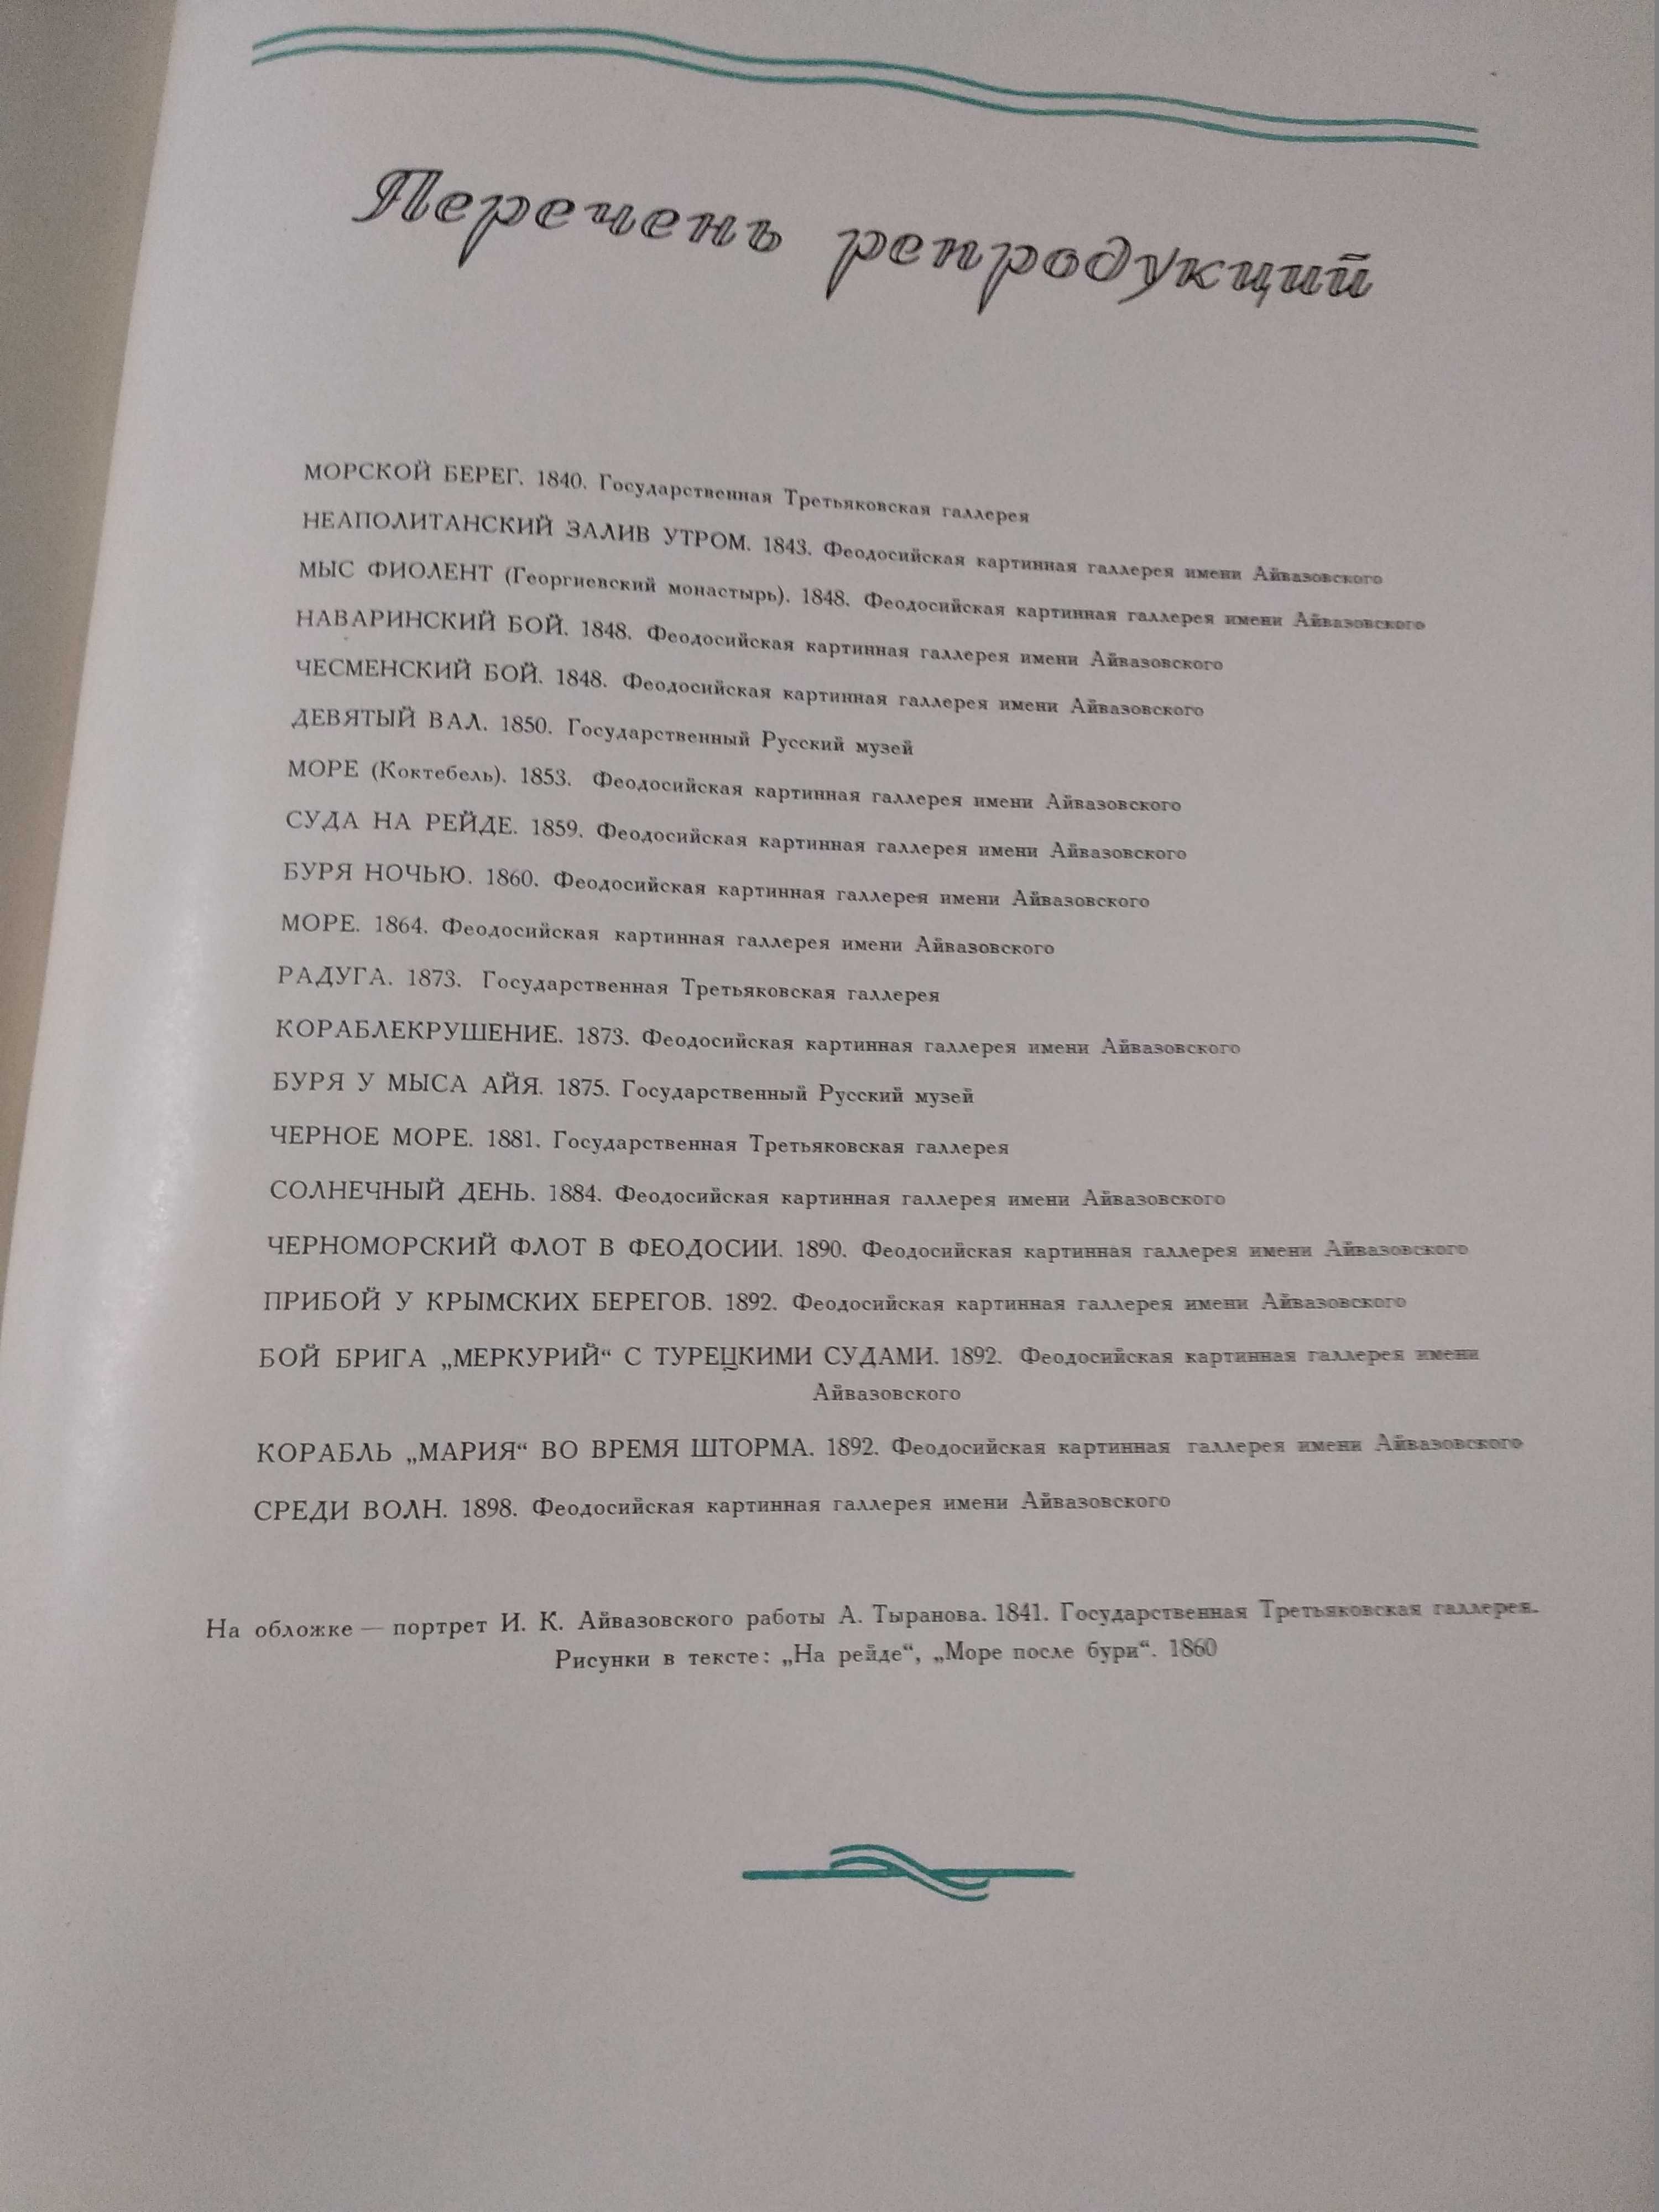 Иван Айвазовский. Альбом репродукций. 1955 год